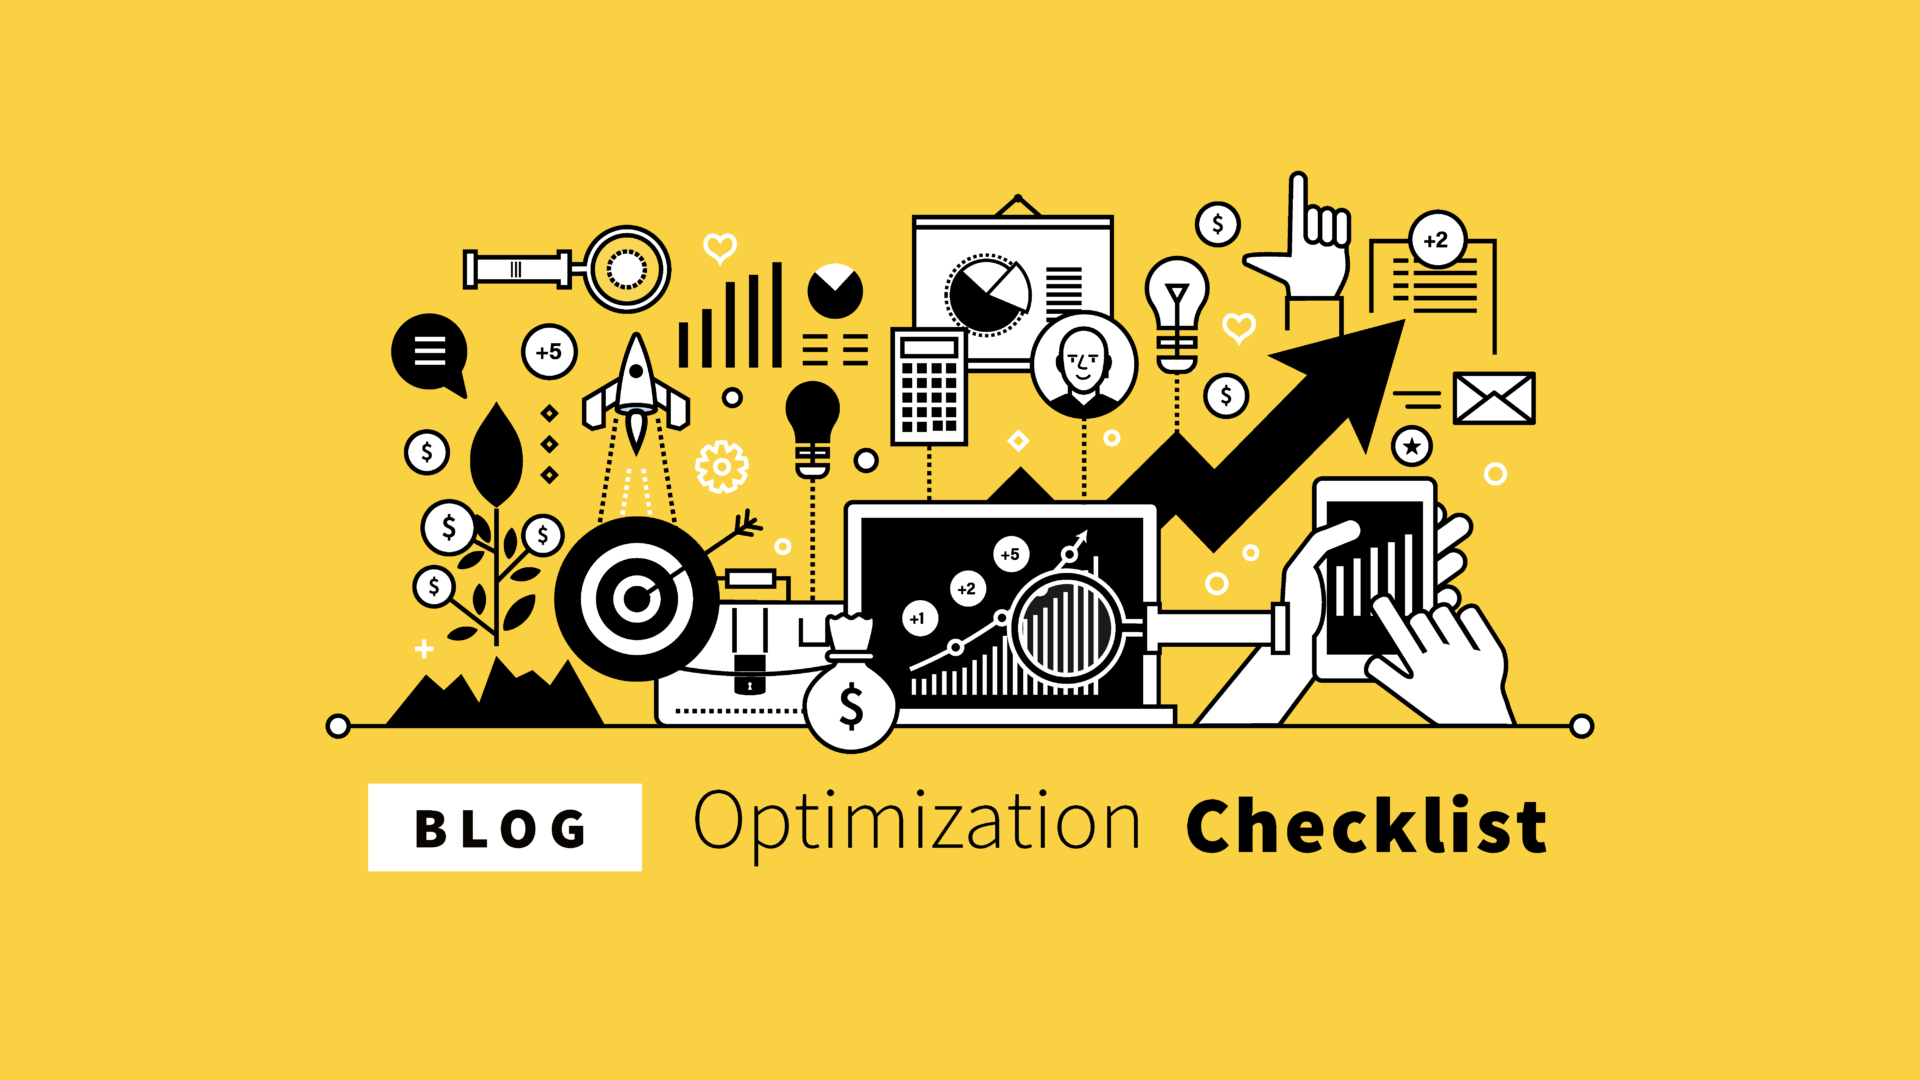 Blog Optimization Checklist